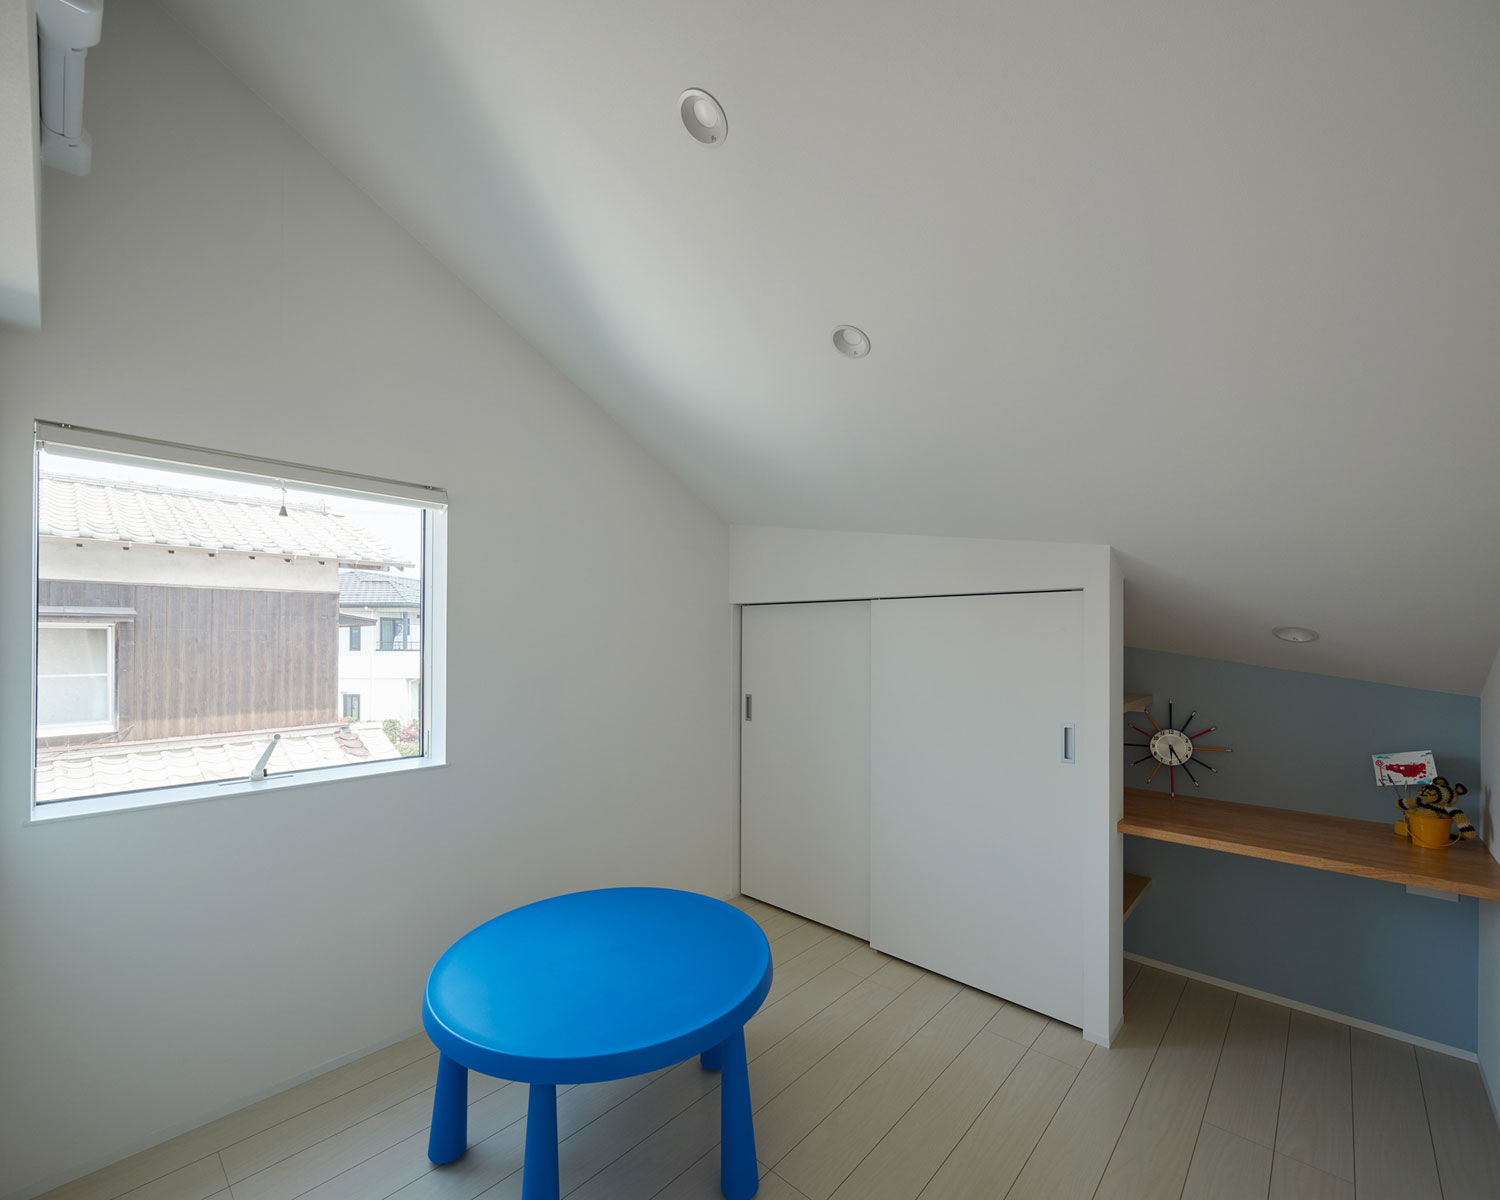 アクセントクロスとテーブルが青で統一された子供部屋・フリーダムアーキテクツの事例